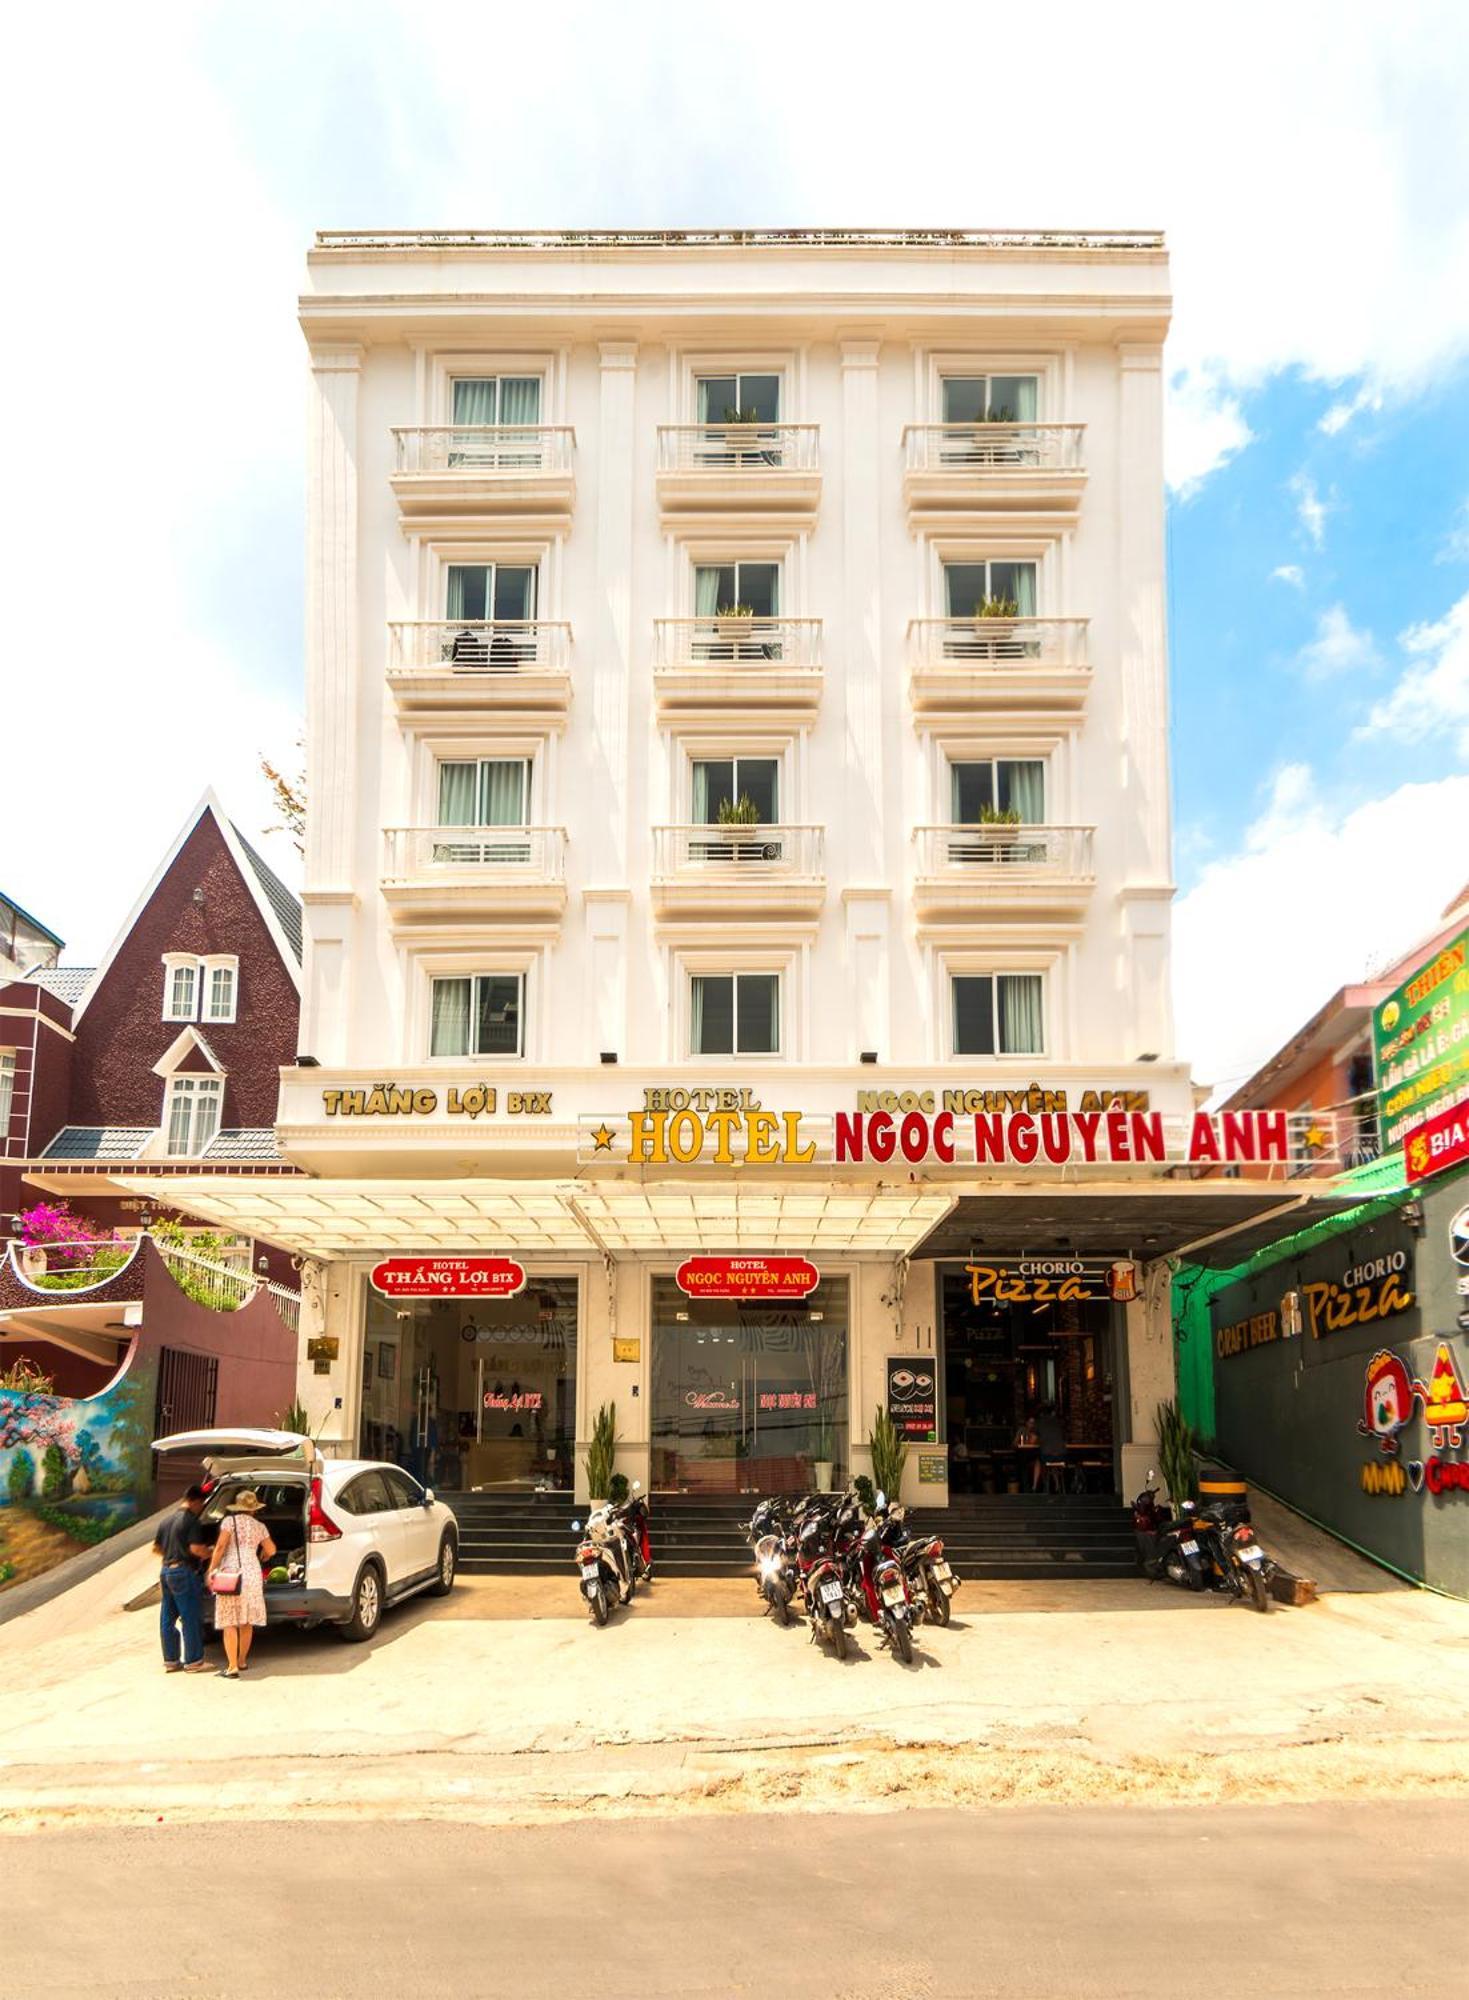 Thang Loi BTX Hotel Đà Lạt Ngoại thất bức ảnh